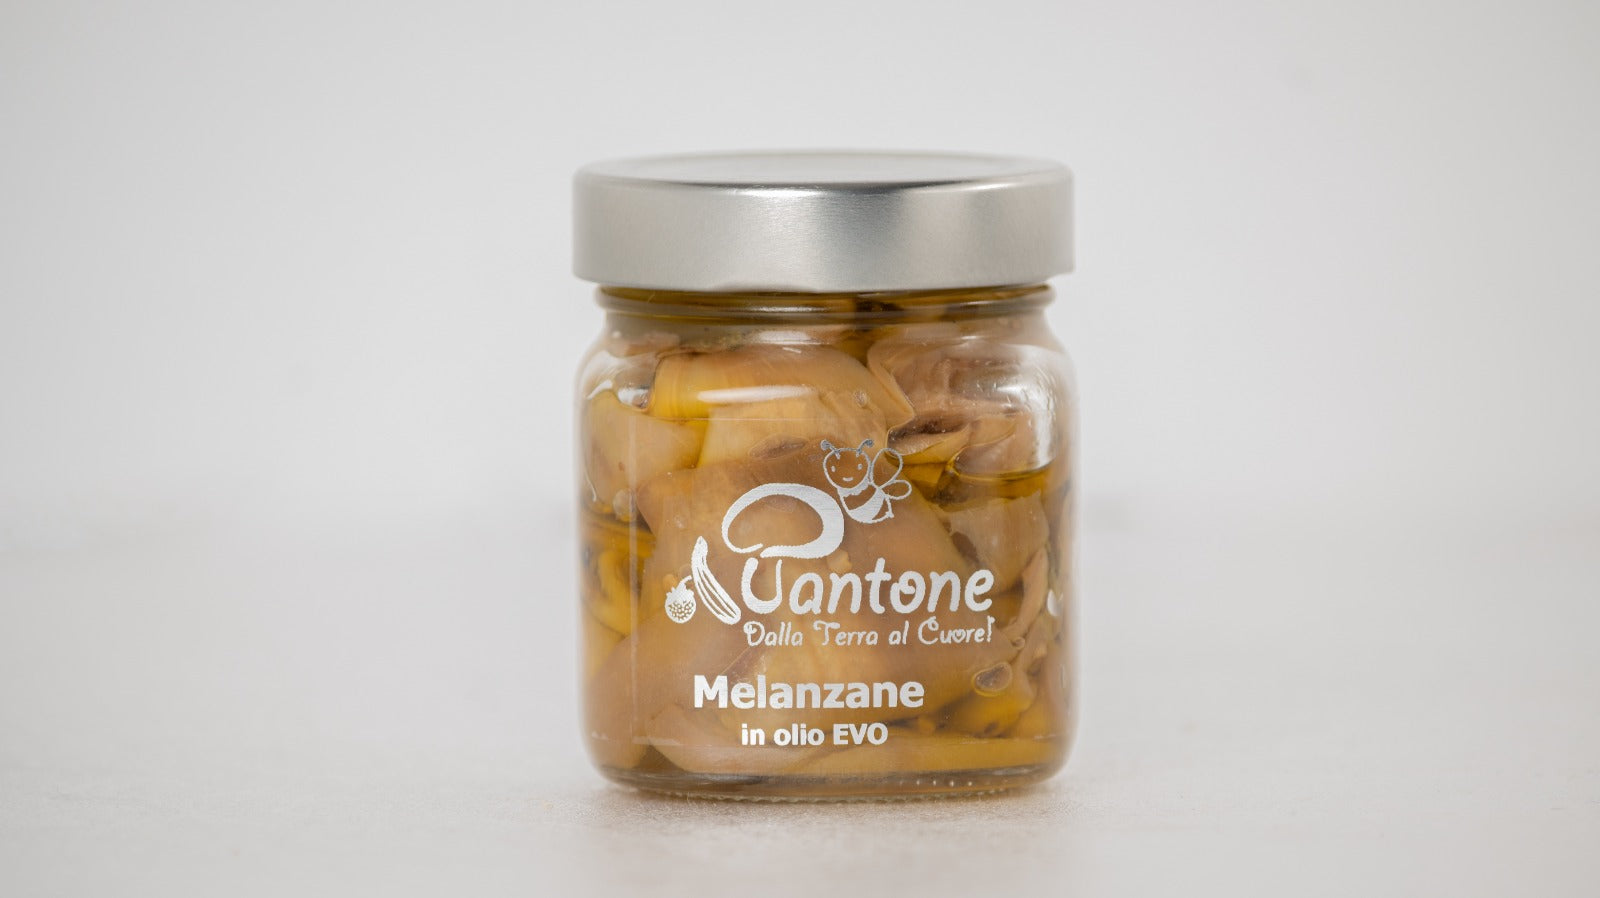 MELANZANE IN OLIO EVO - PANTONE - I migliori prodotti Made in Italy da Fiera di Monza Shop - Solo 31.50€! Acquista subito su Fiera di Monza Shop!